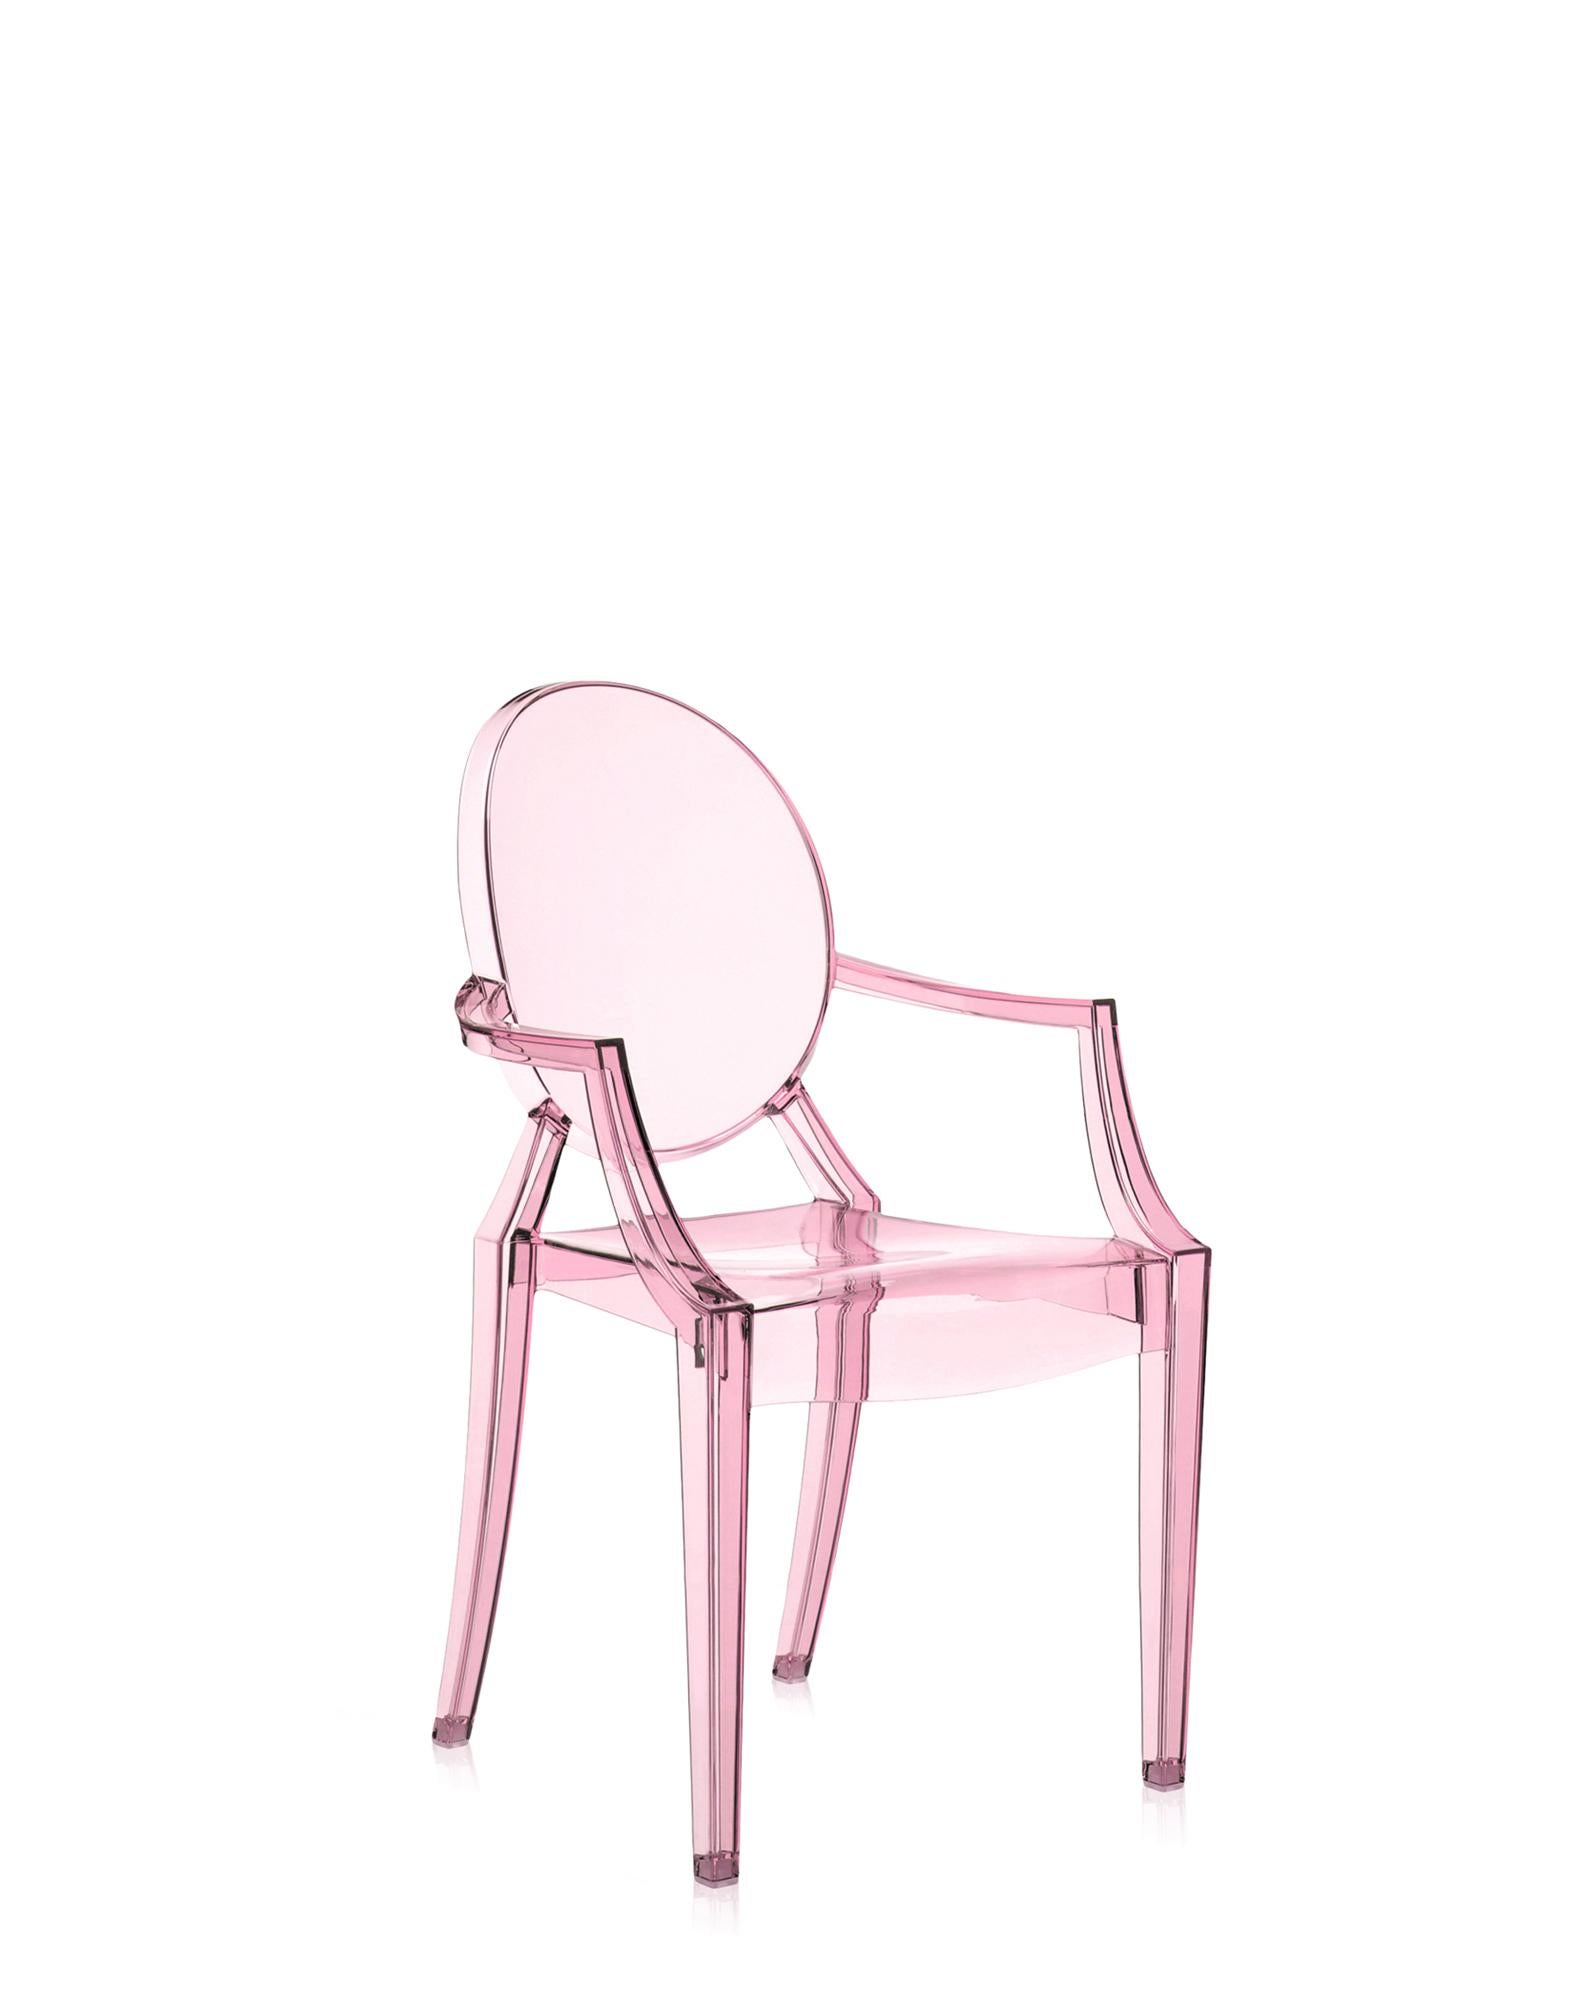 Die Miniaturversion eines der berühmtesten Designstühle ergänzt die Linie Kartell Kids in mehreren neuen Versionen. Der Lou Lou Ghost von Philippe Starck erhält eine neue, individuell gestaltbare Grafik für die lustige Welt der Kinder.

Abmessungen: